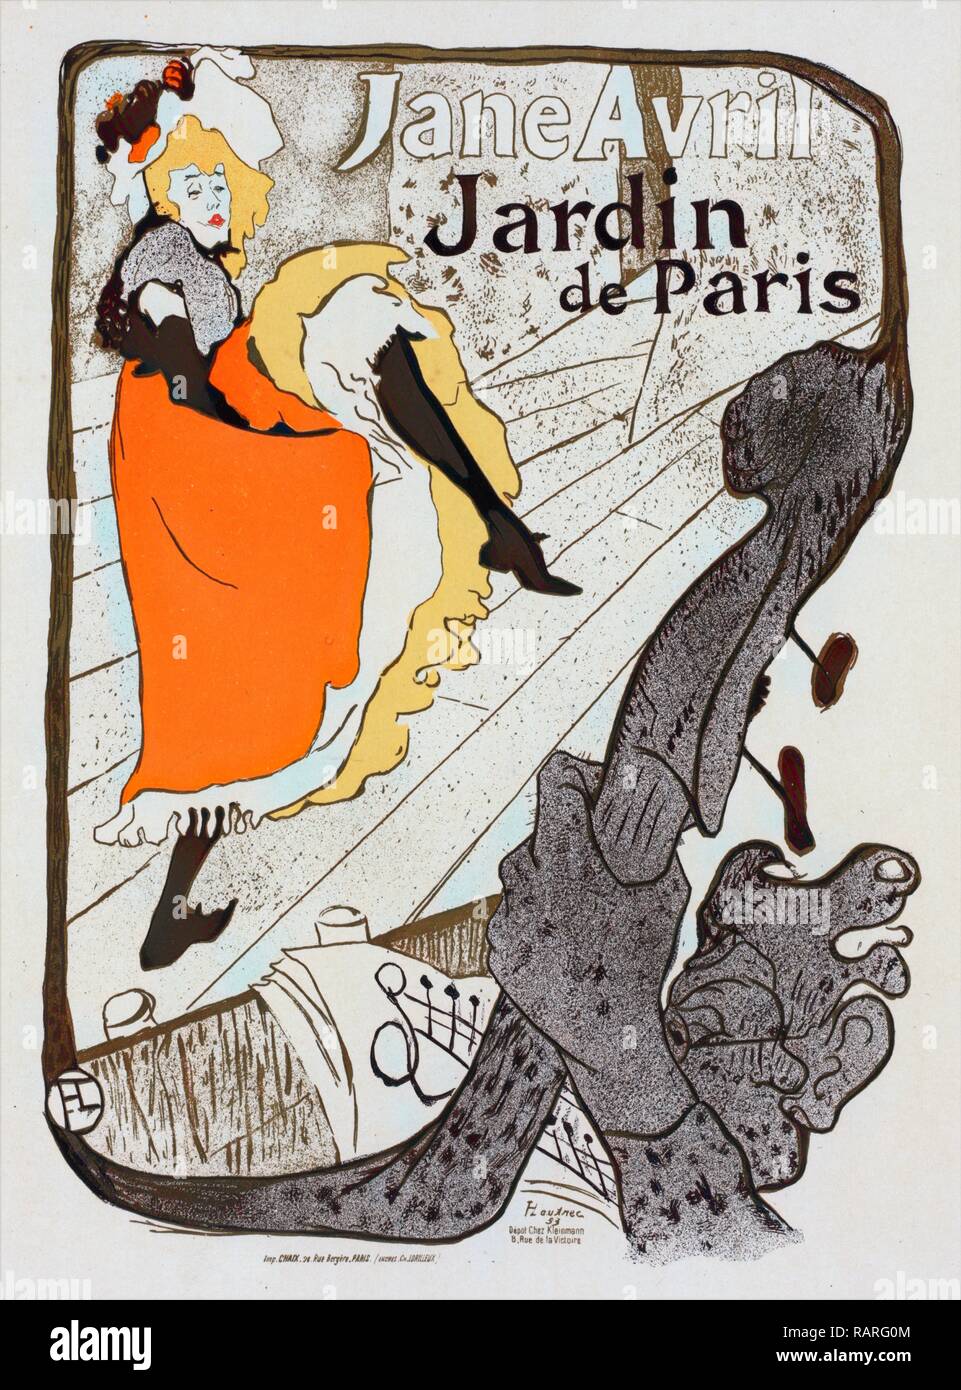 Affiche pour le Jardin de Paris Jane Avril. Toulouse-Lautrec, Henri de (1864-1901), peintre et graveur français repensé Banque D'Images